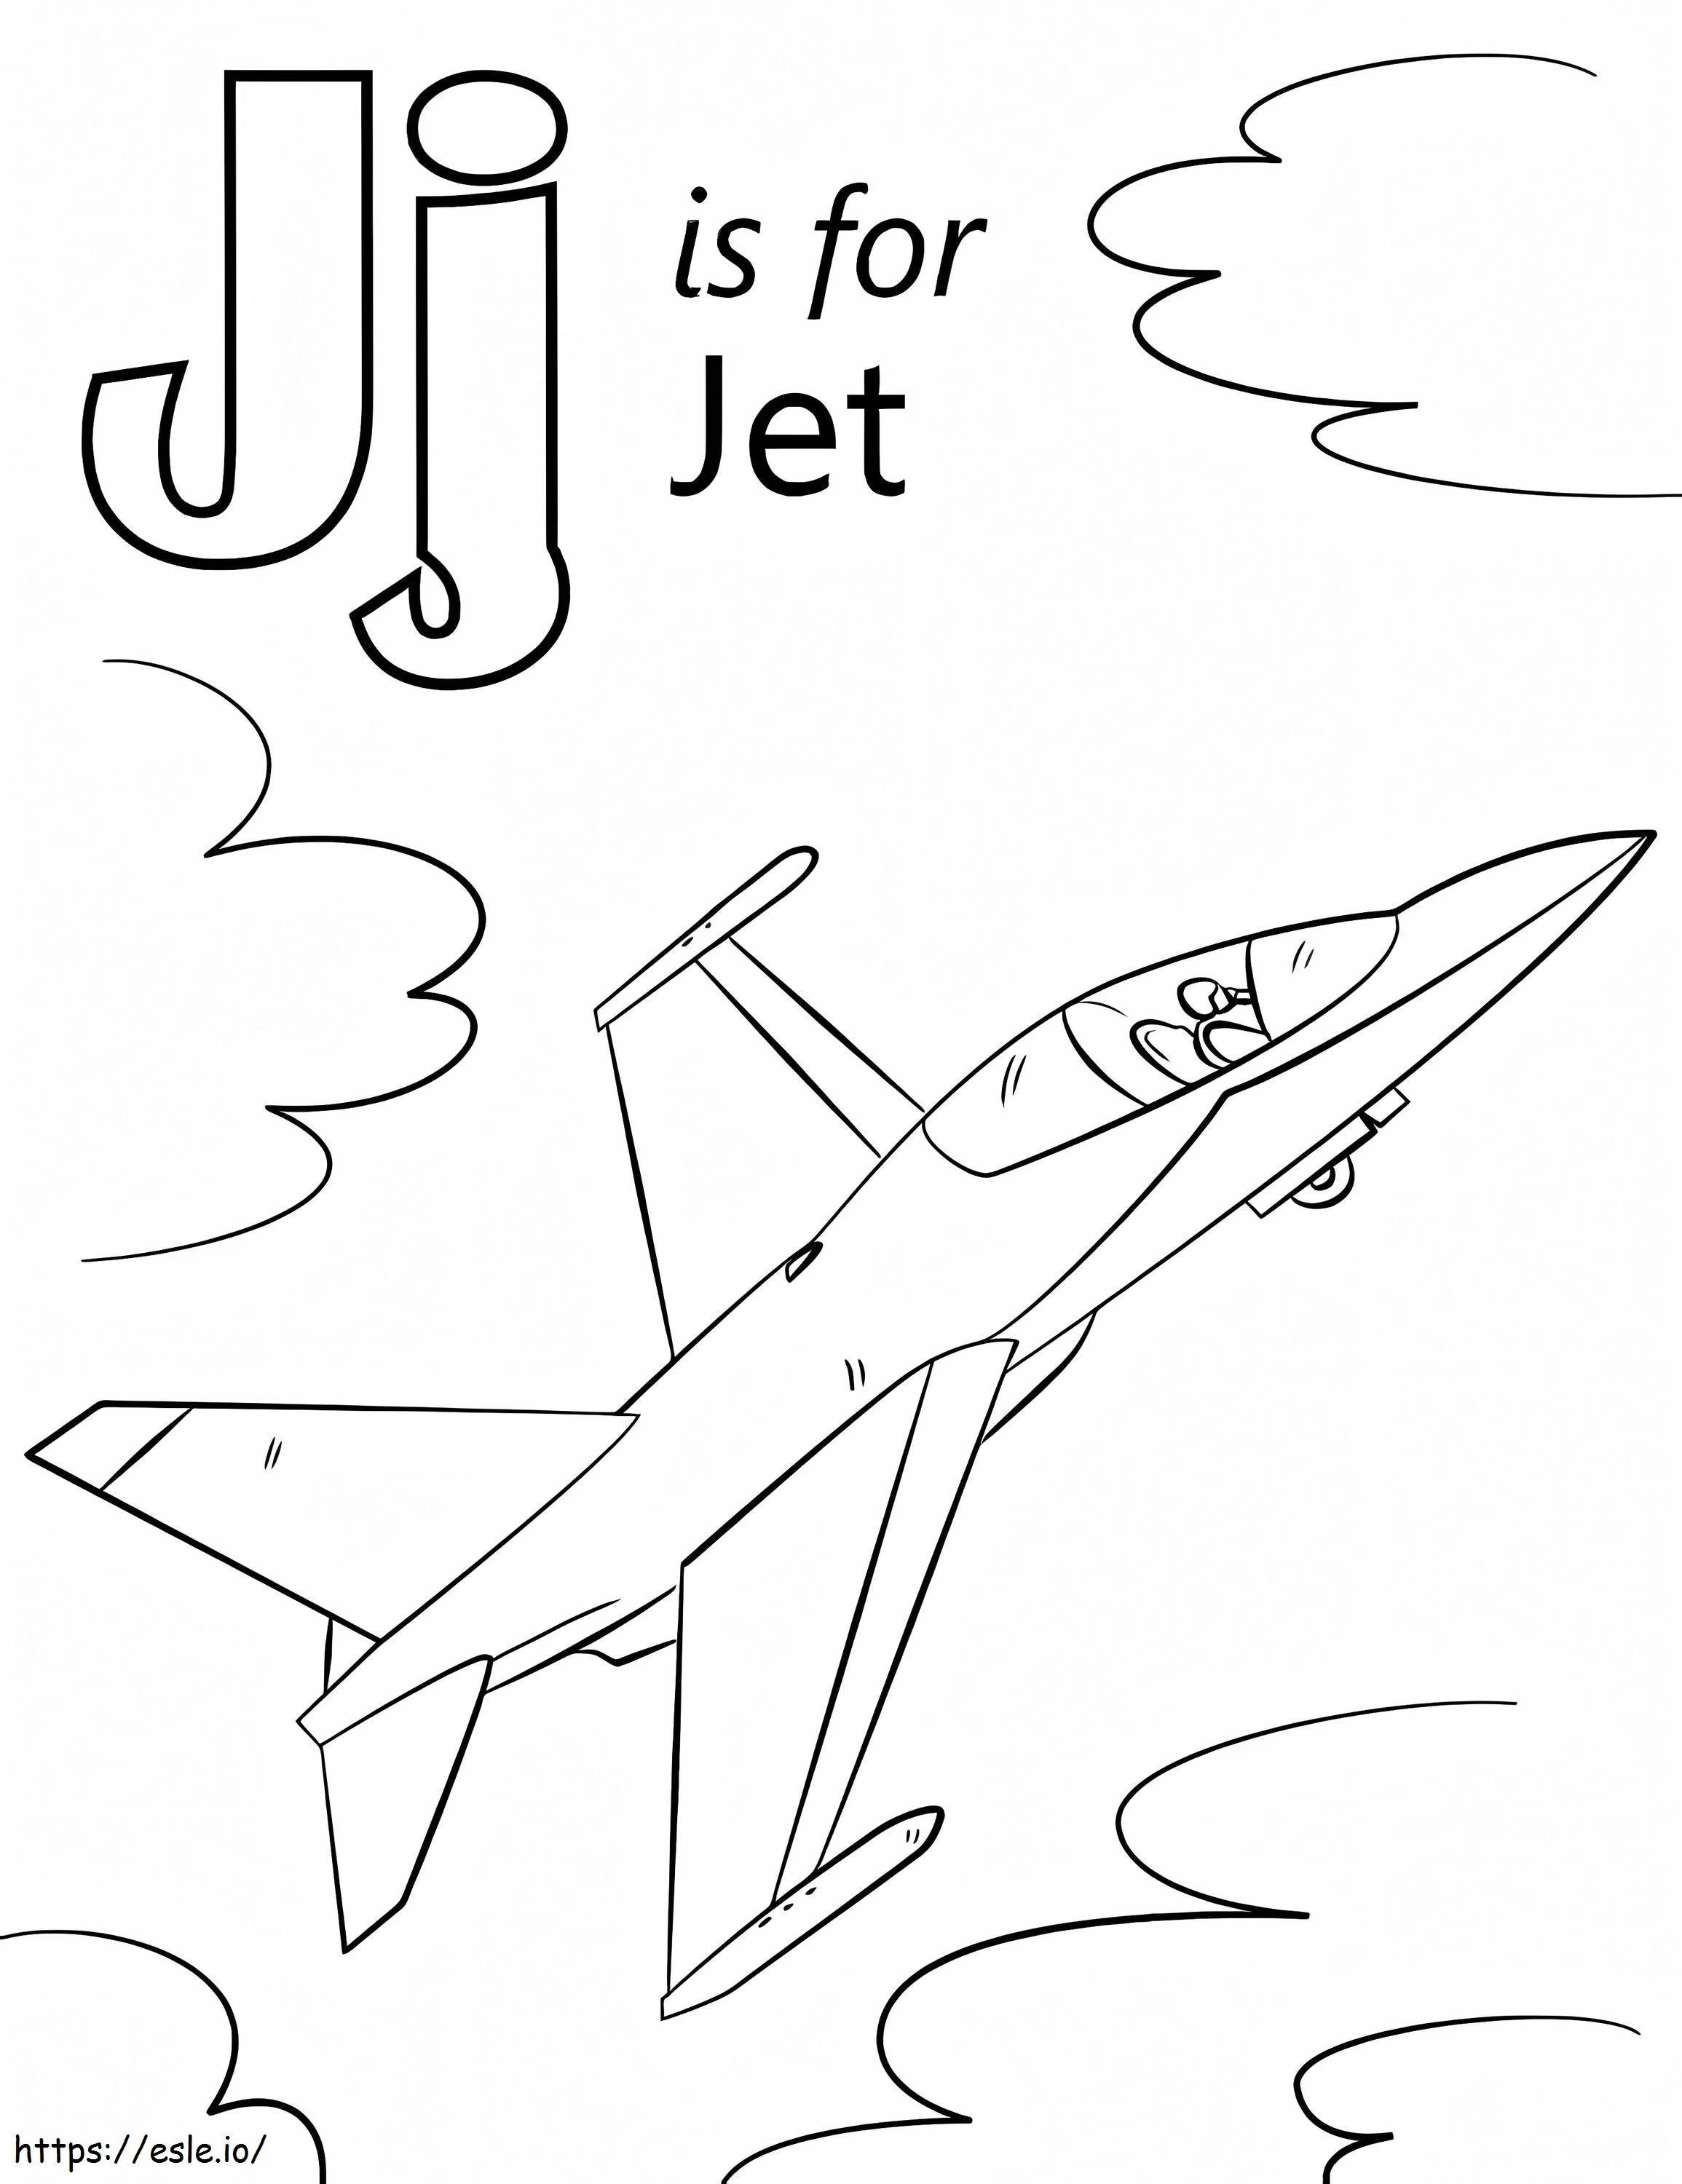 Jet Letter J kleurplaat kleurplaat